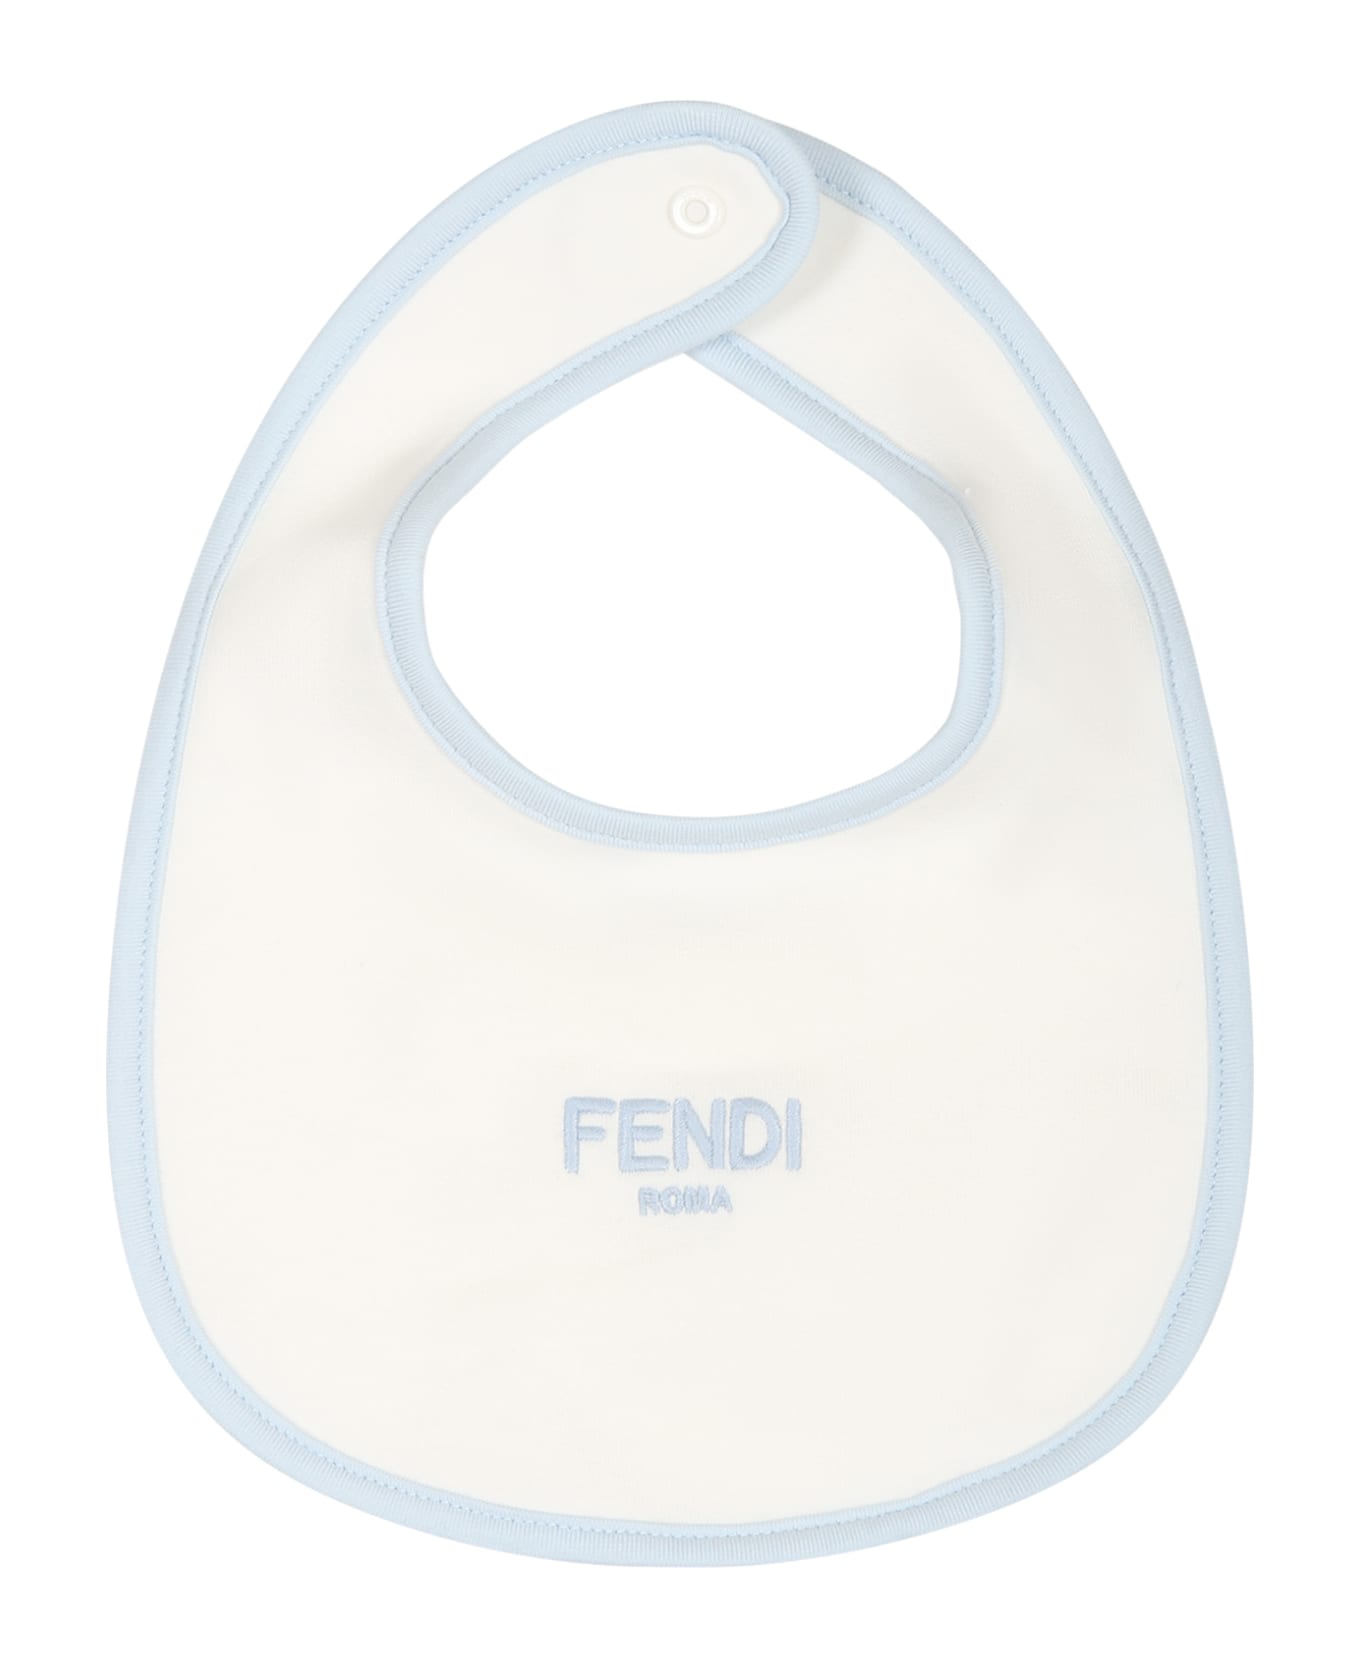 Fendi Light Blue Set For Baby Girl With Logo - Light Blue